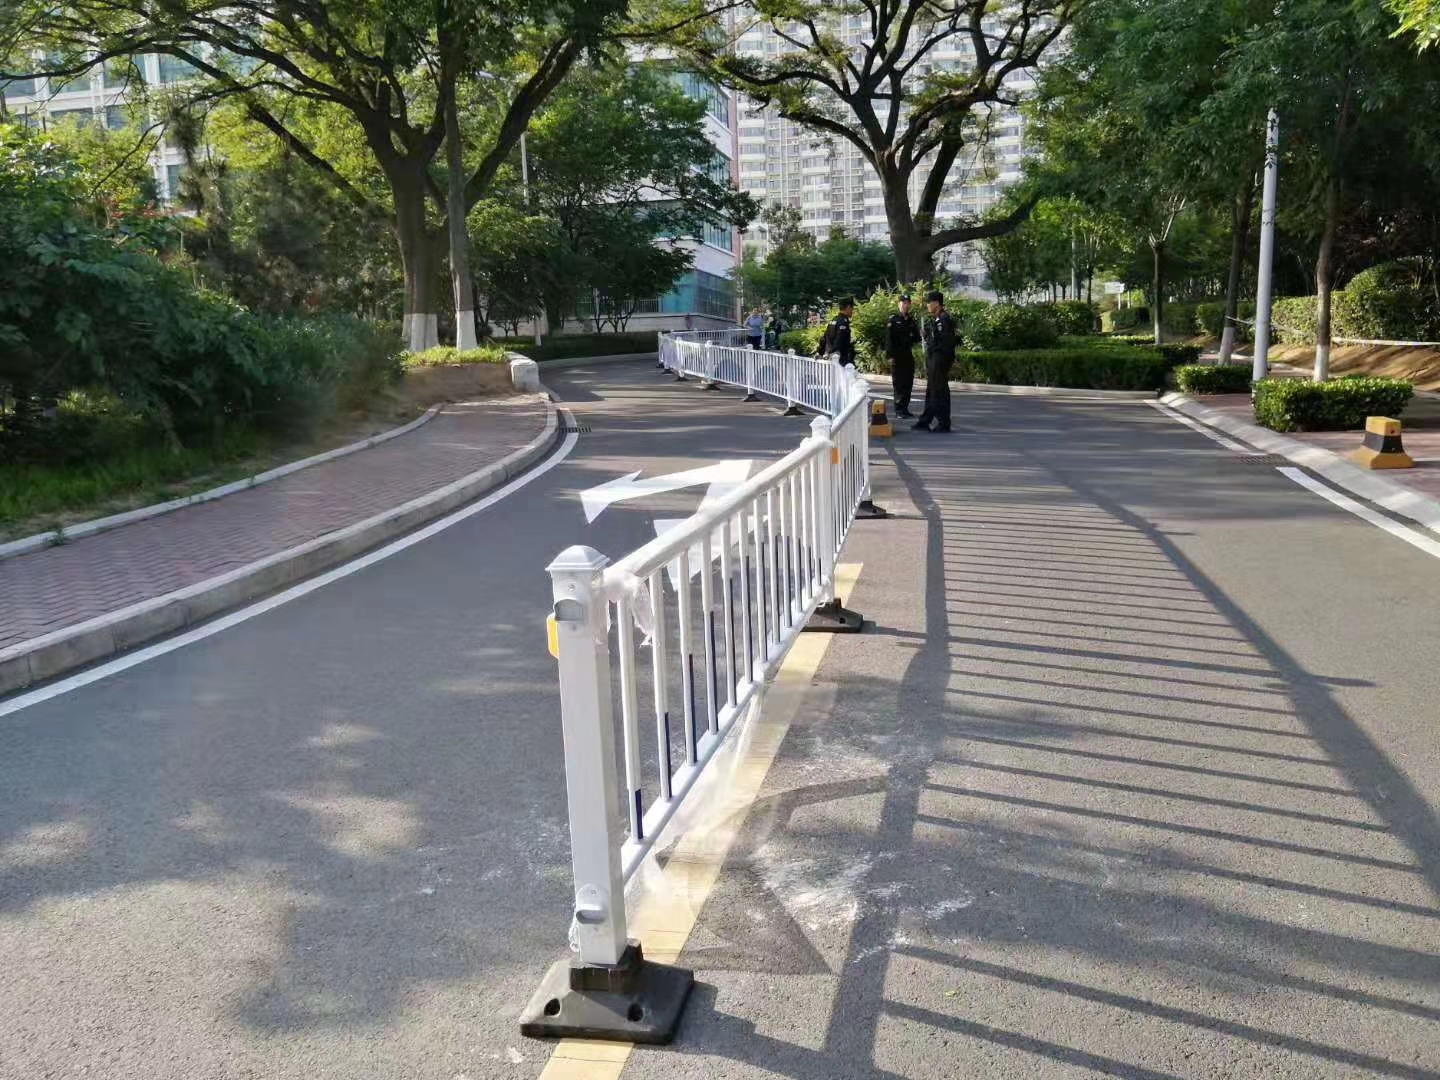 市政护栏 街道中心隔离栏  市政设施 公路机动车分割围栏  道路人行道城市交通栏